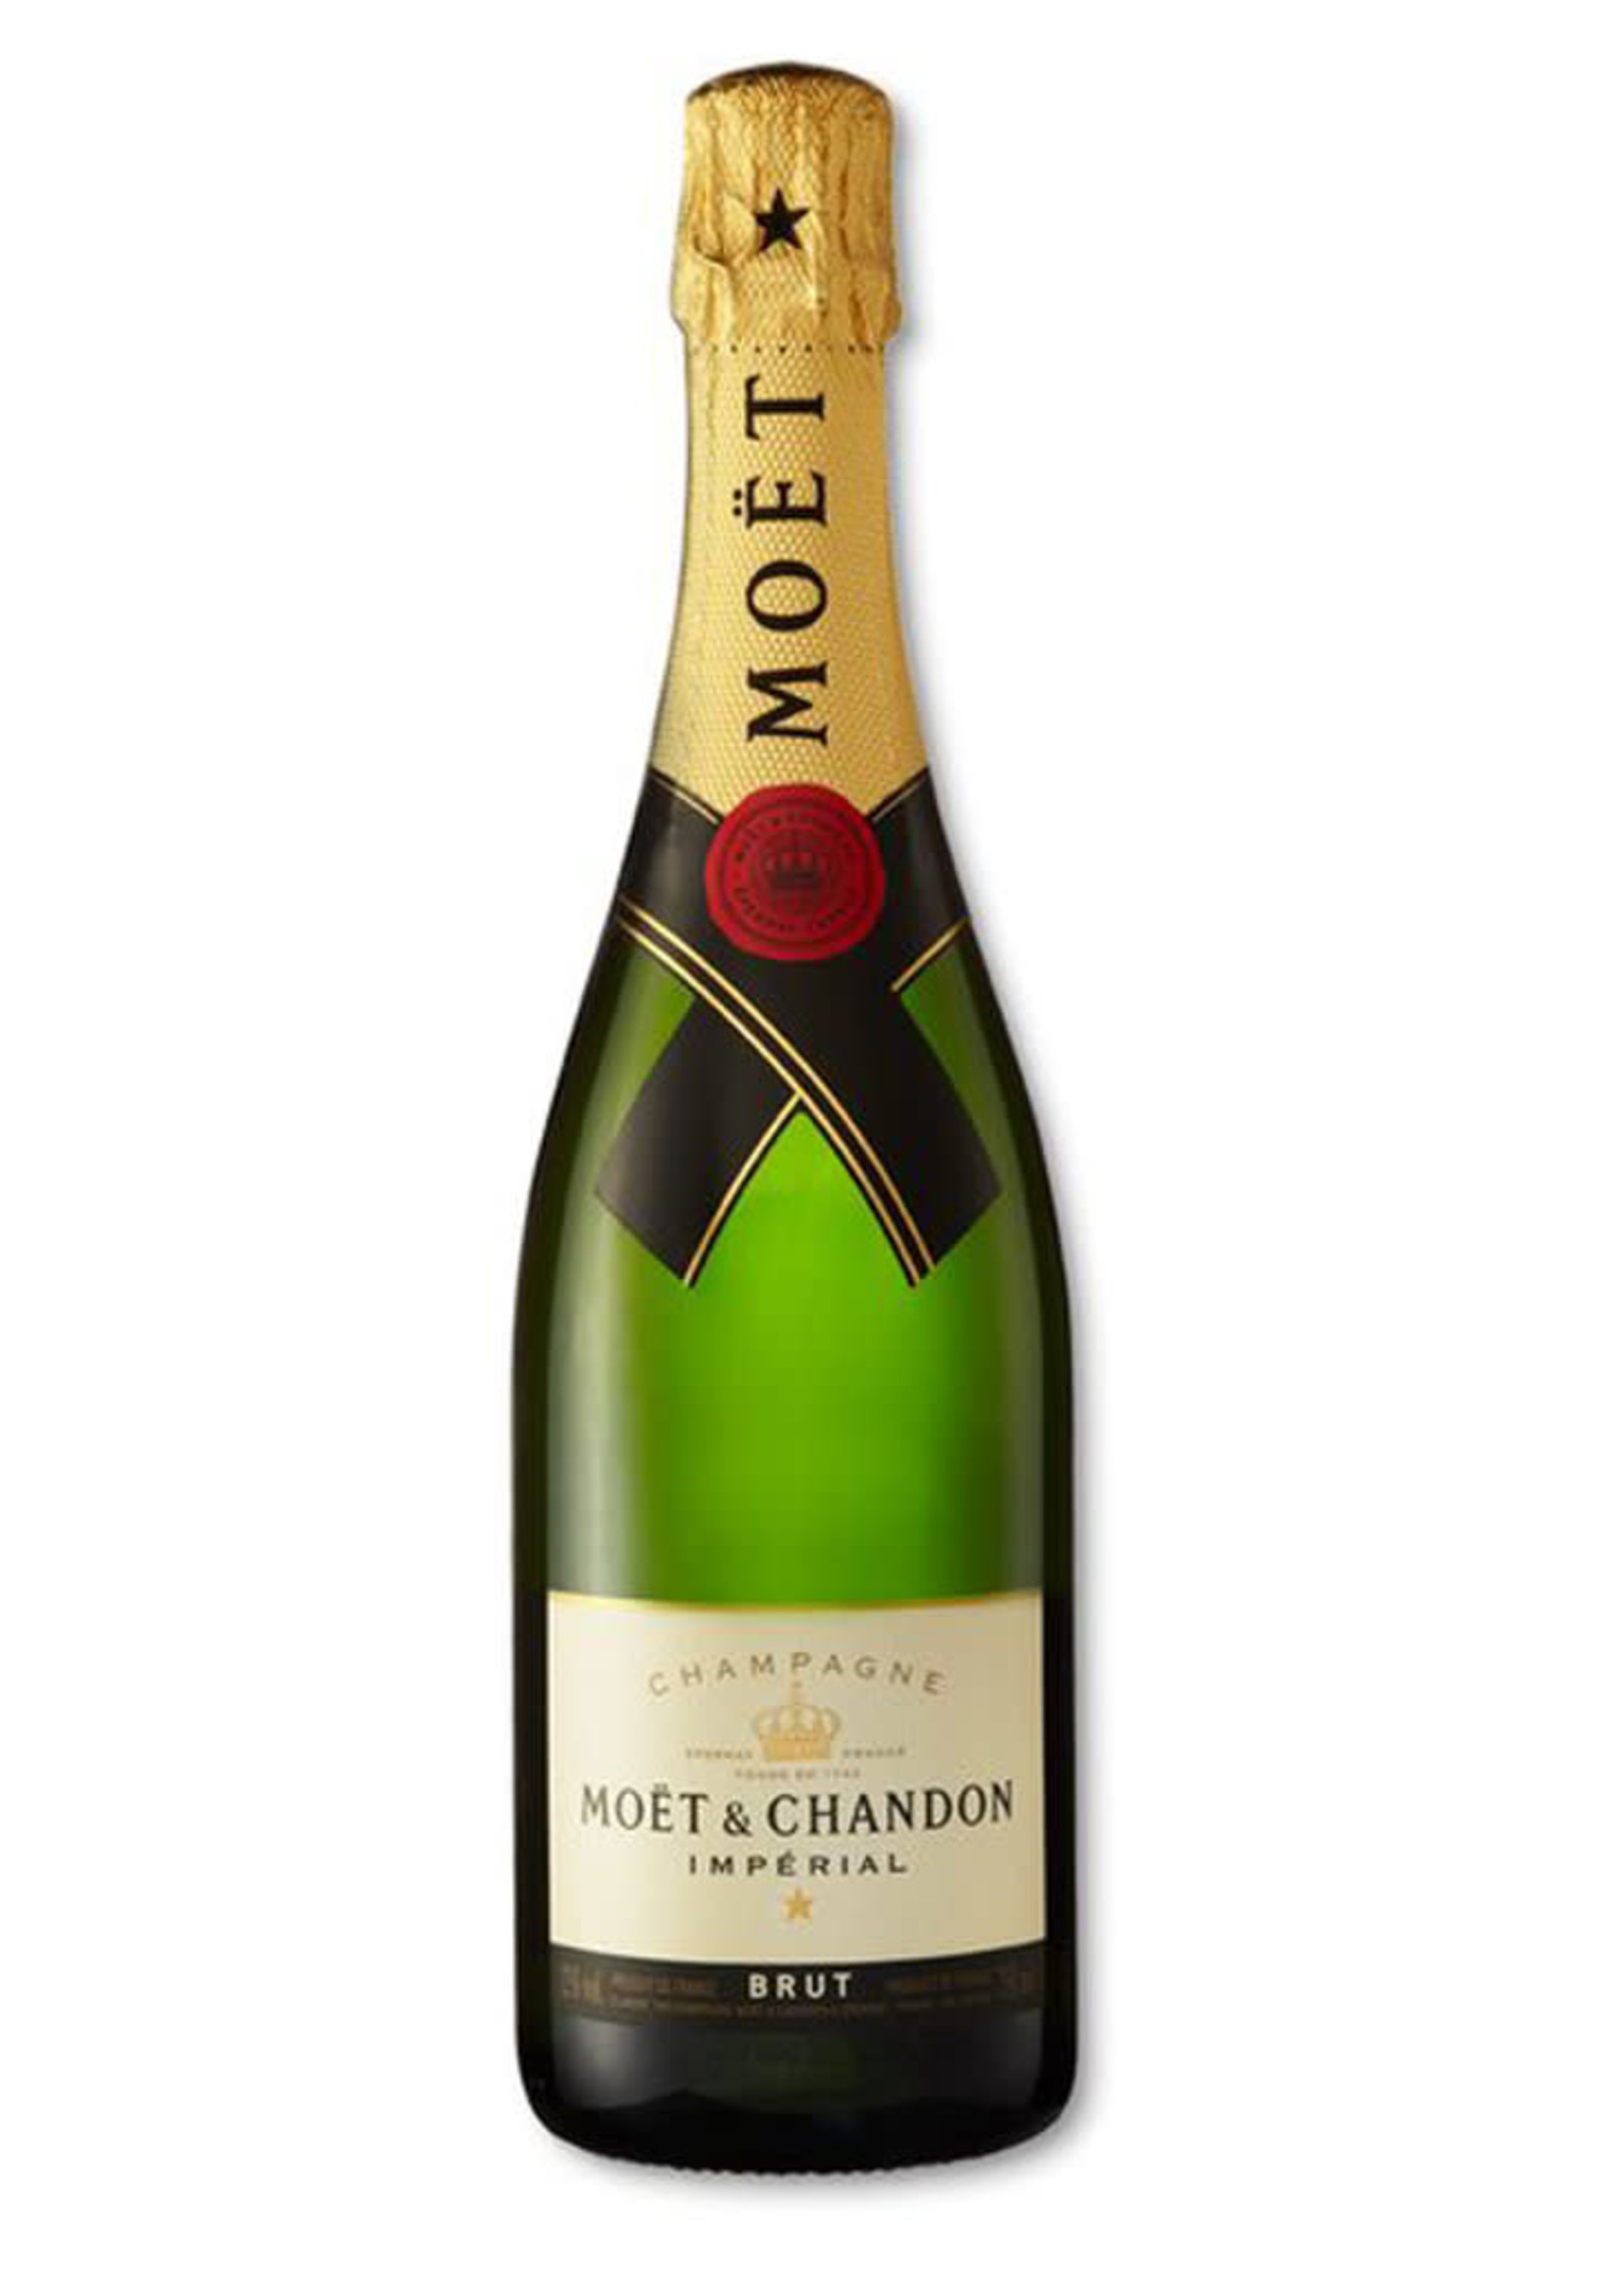 Moët & Chandon Imperial Brut Champagne, France